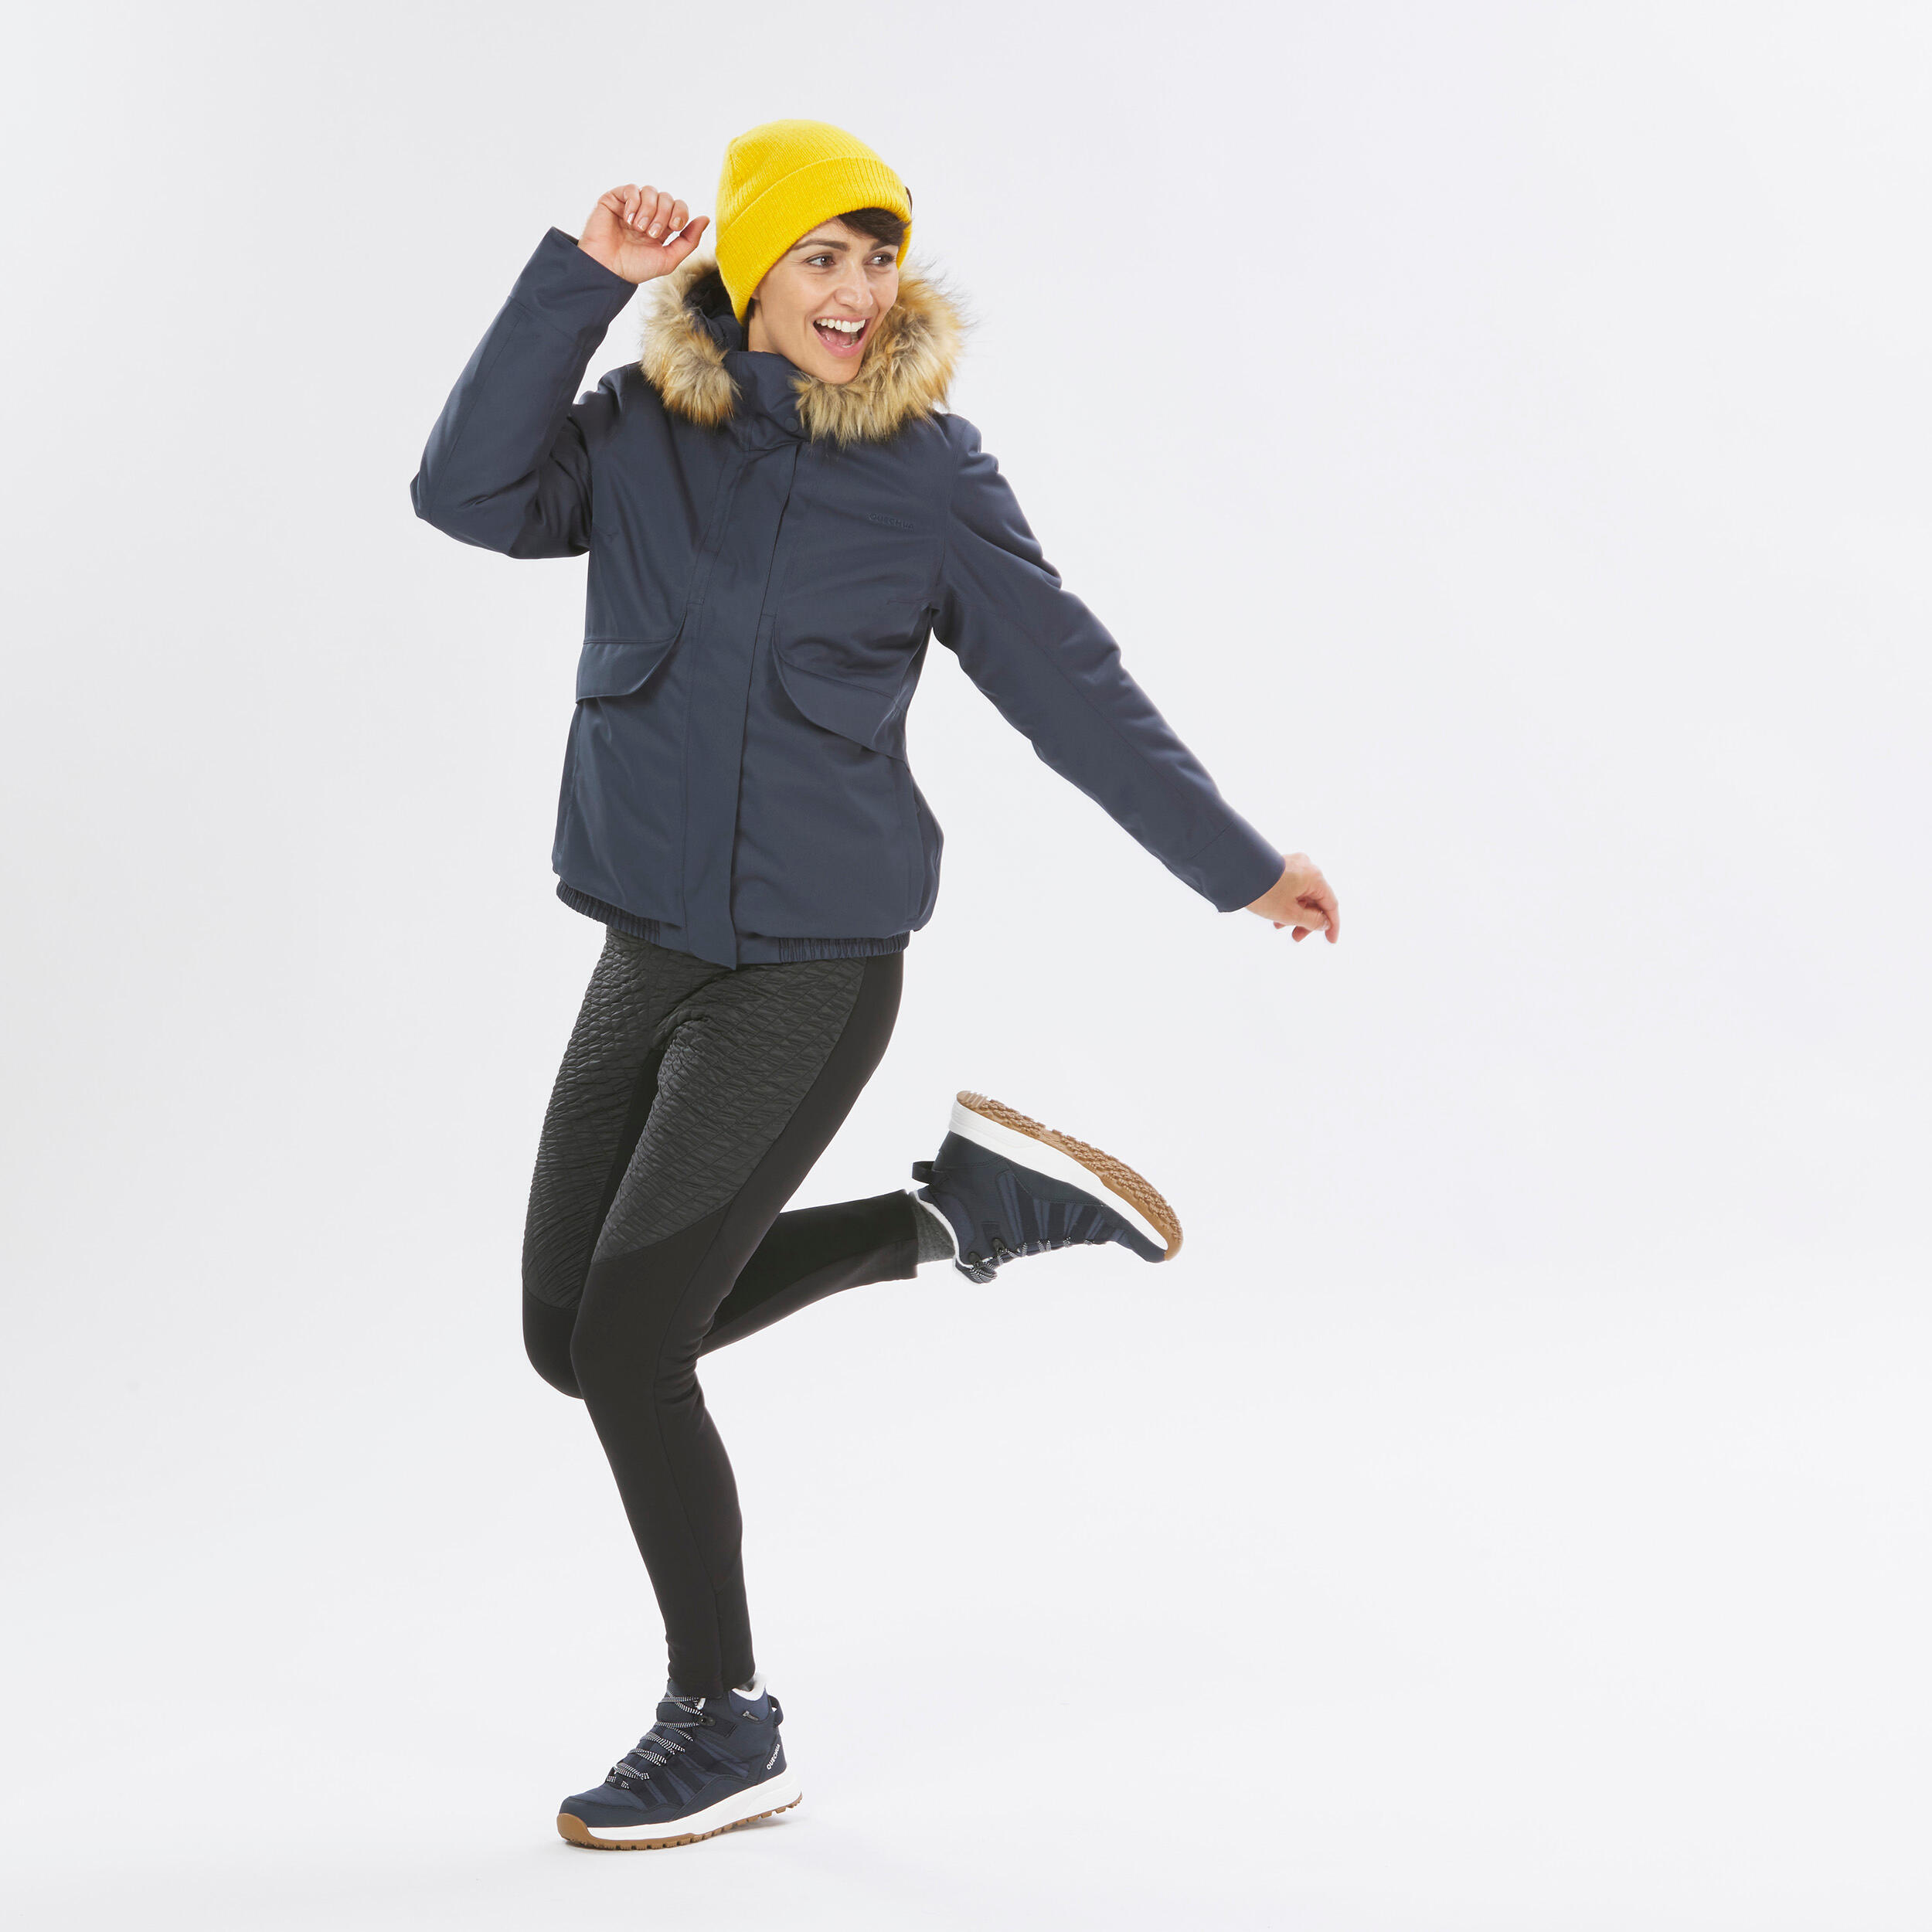 Women’s waterproof winter hiking jacket - SH500 -8°C 14/14